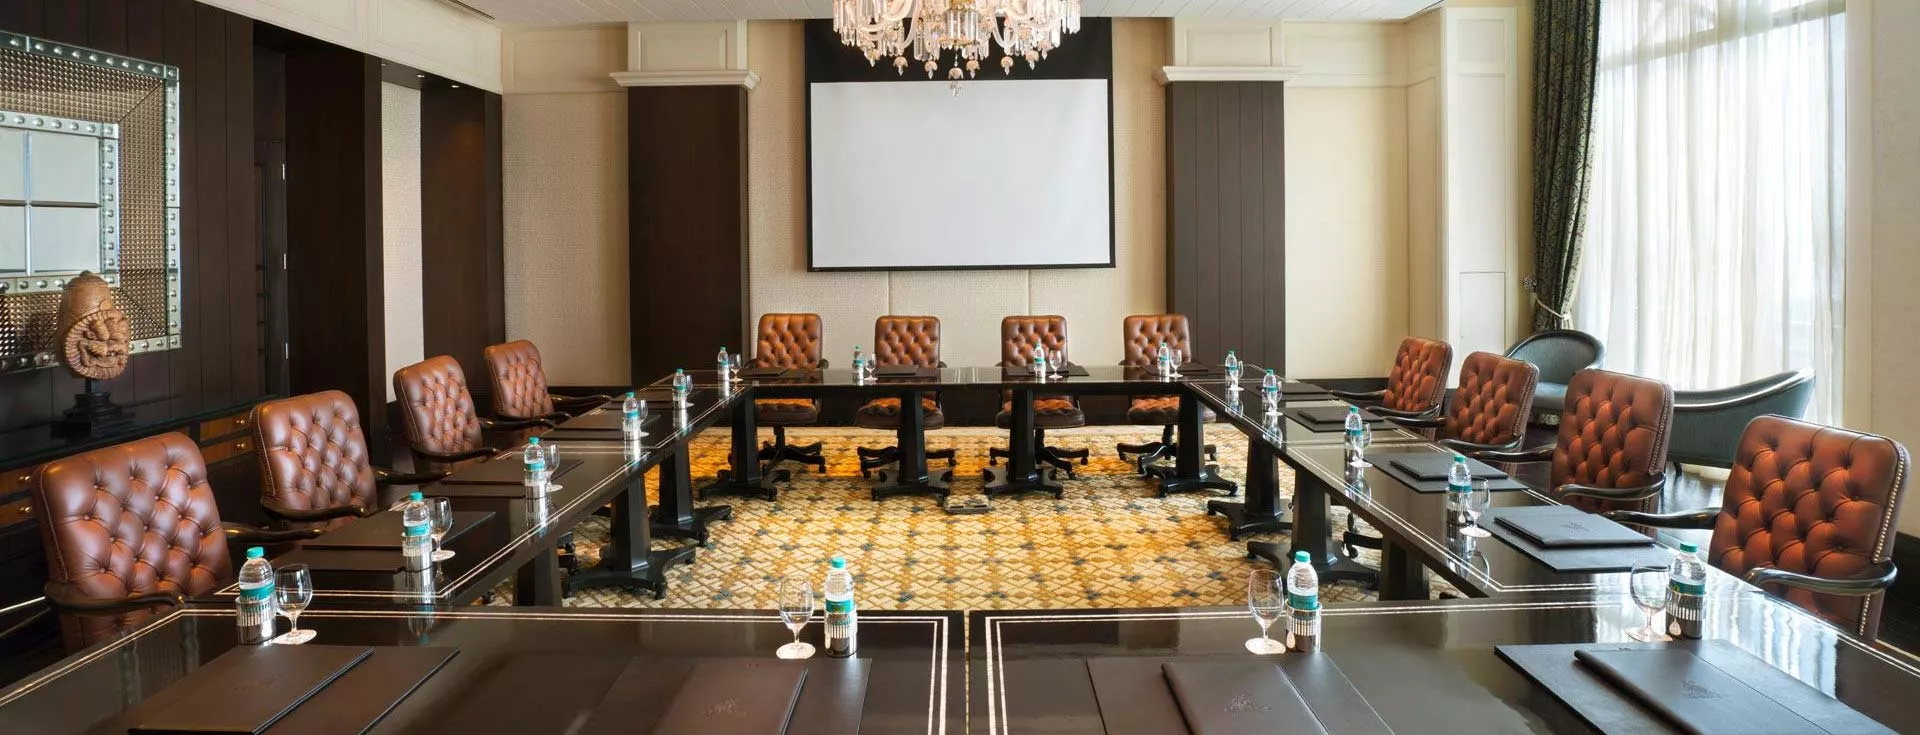 Meetings at Chennai hotels